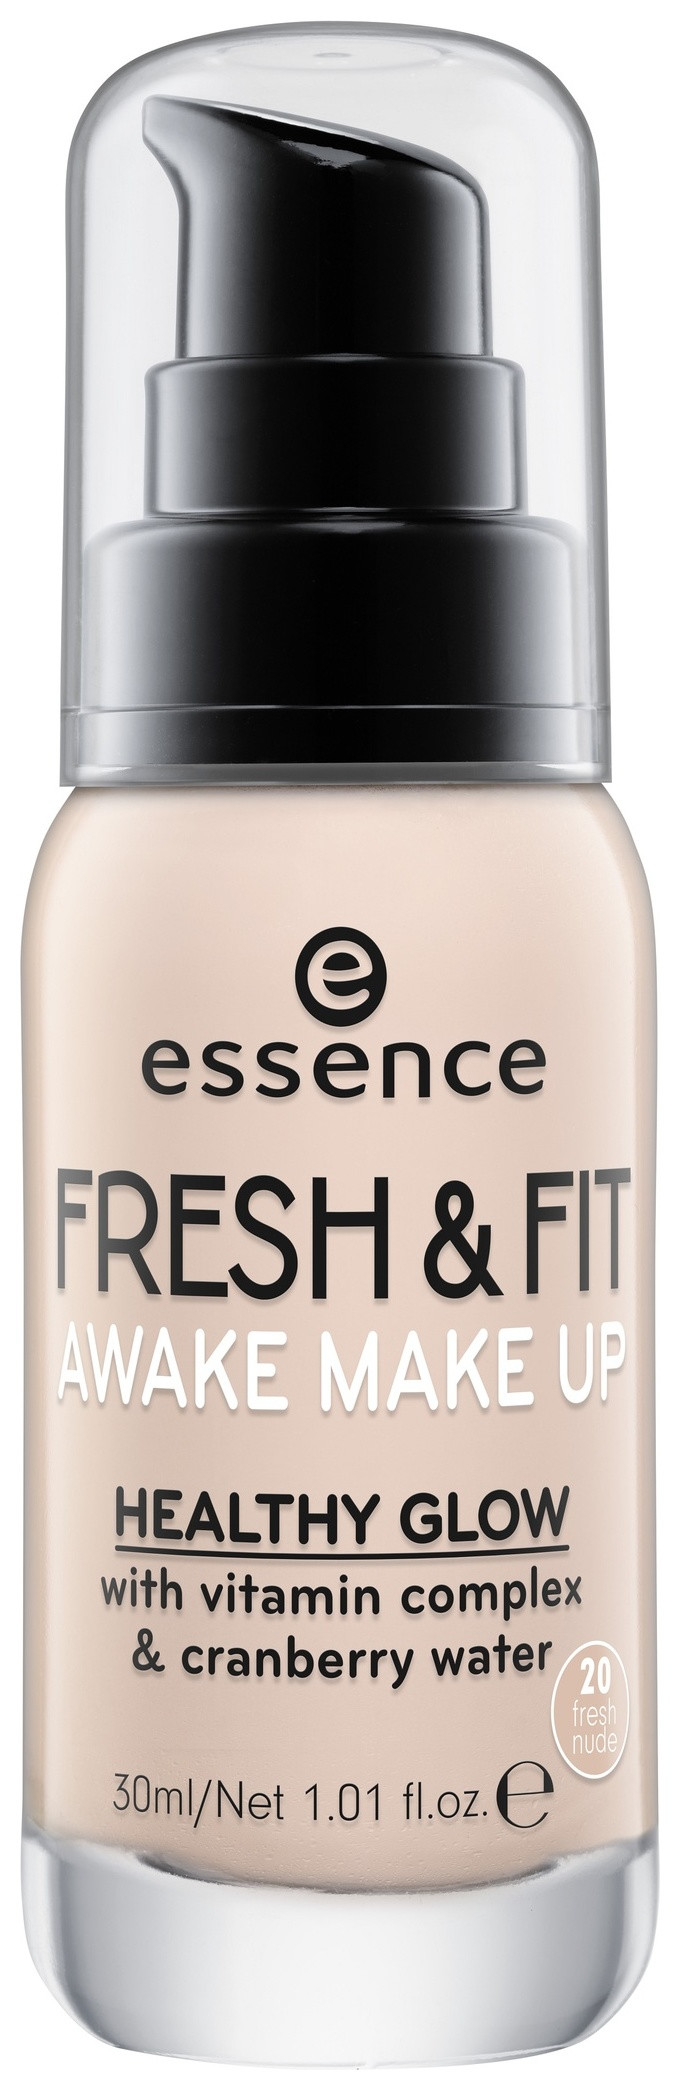 Тональная основа "Fresh & fit awake make up" Essence